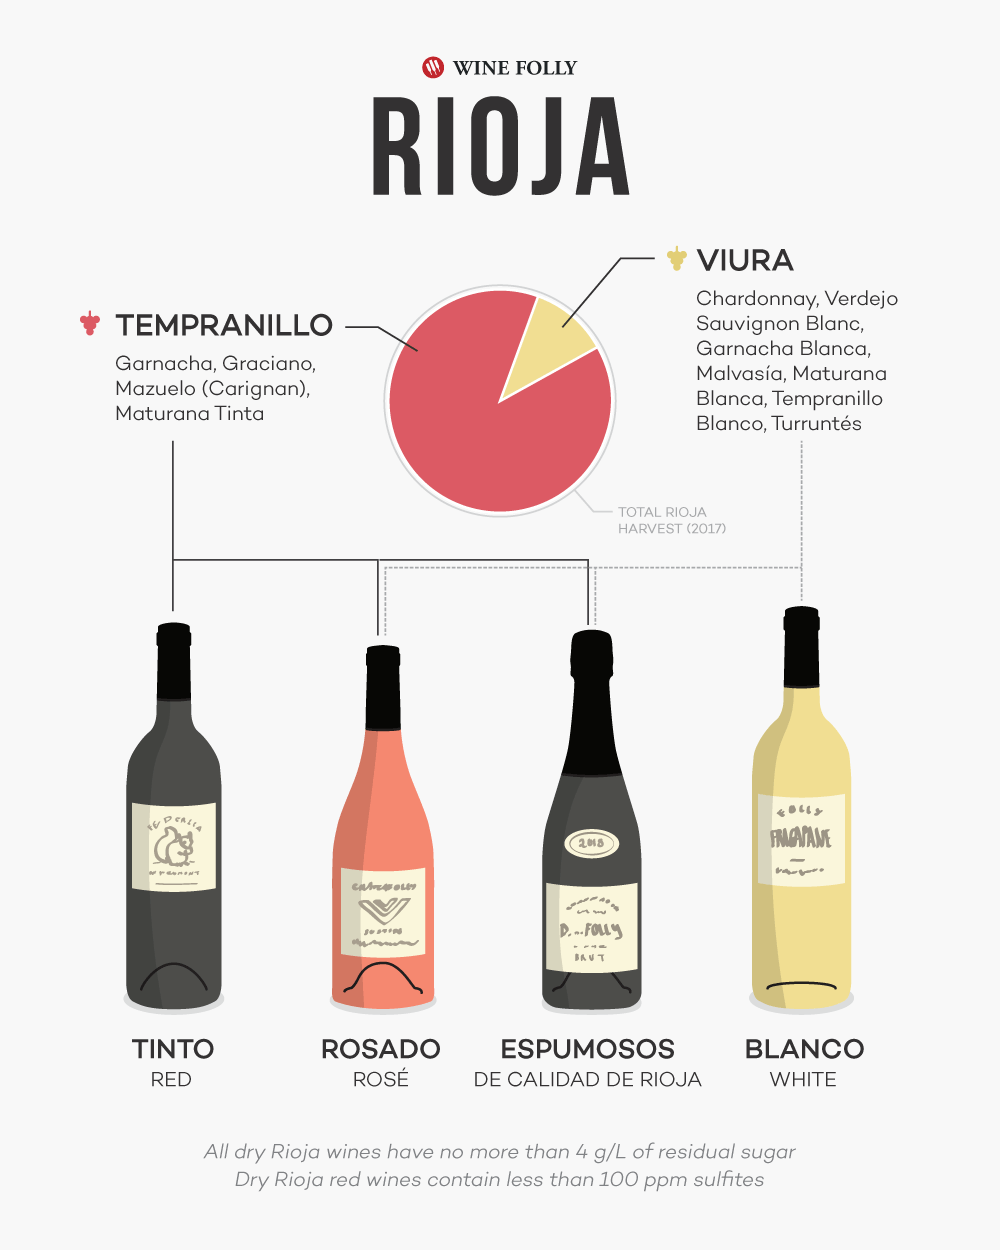 Испанские красные вина риохи: сорт rioja (реха) из испании